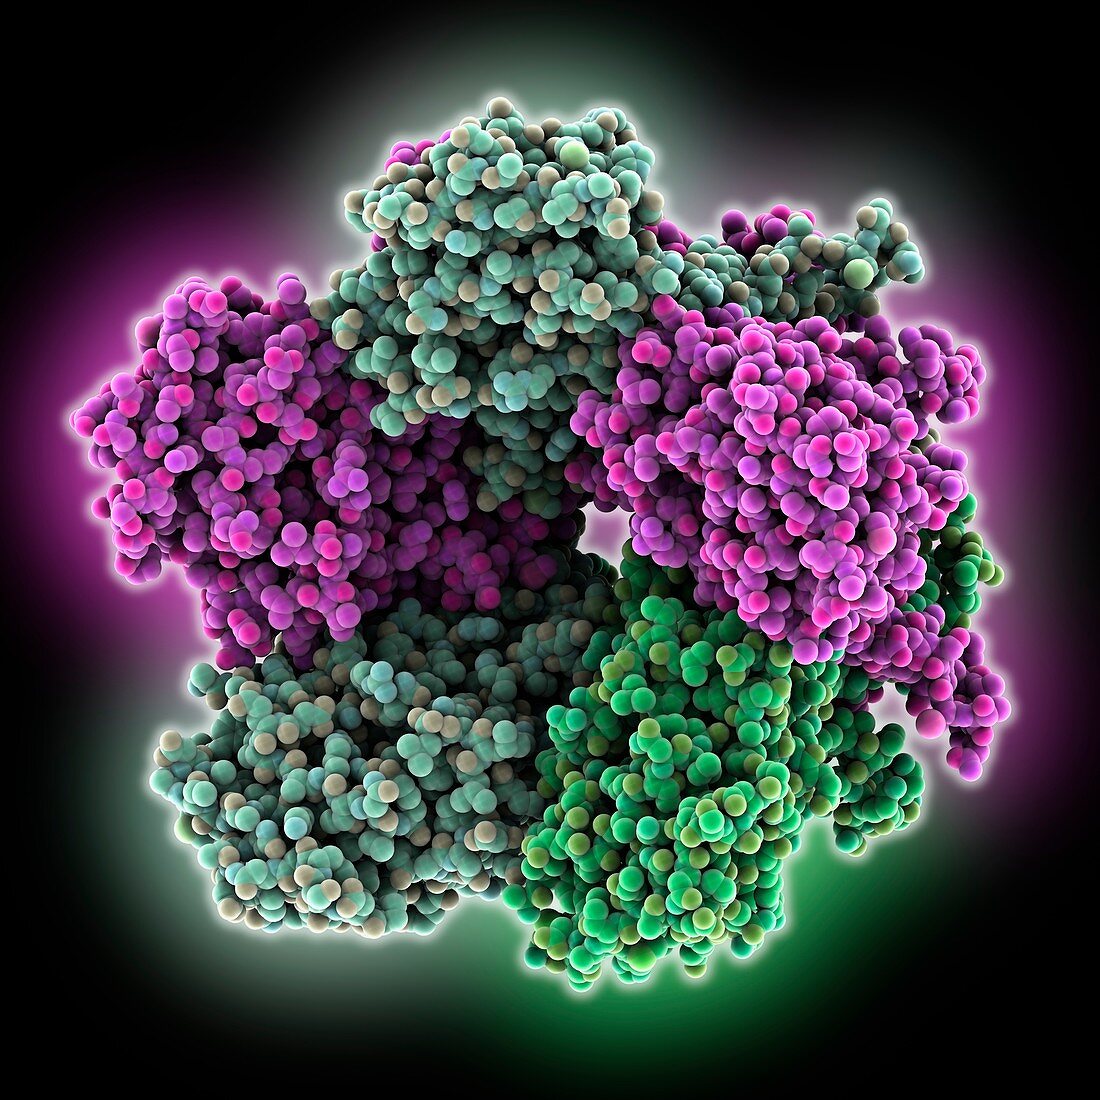 Human papilloma virus capsid protein